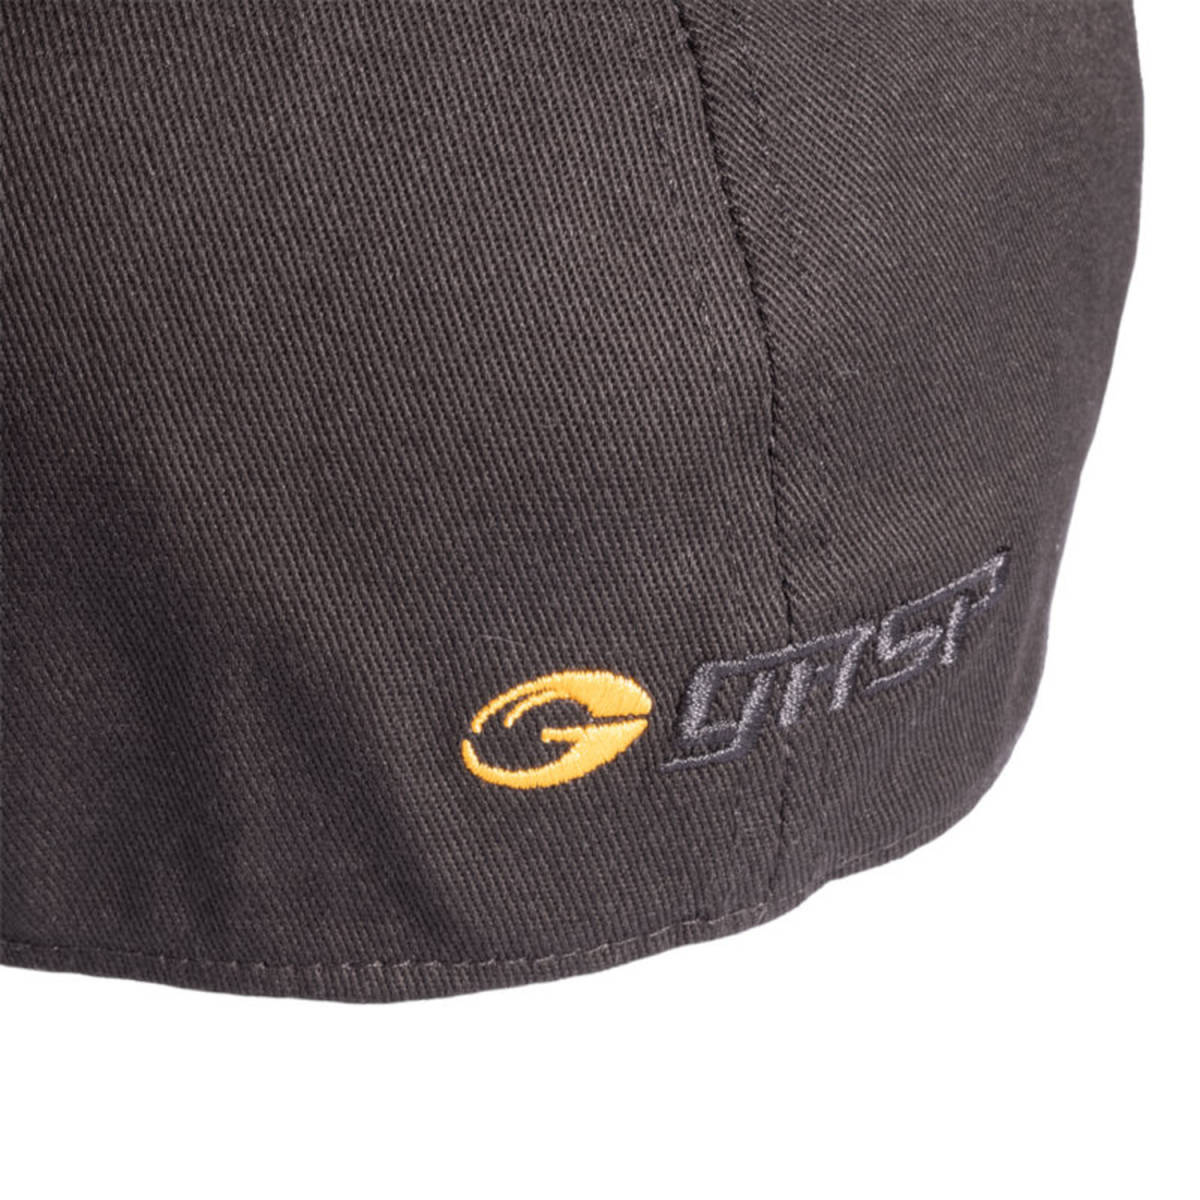 [ производитель прямой импорт стандартный товар / бесплатная доставка ] GASP газ pgyasp колпак dati колпак S/M черный * Jim одежда / корпус Bill / fi'zi:k 